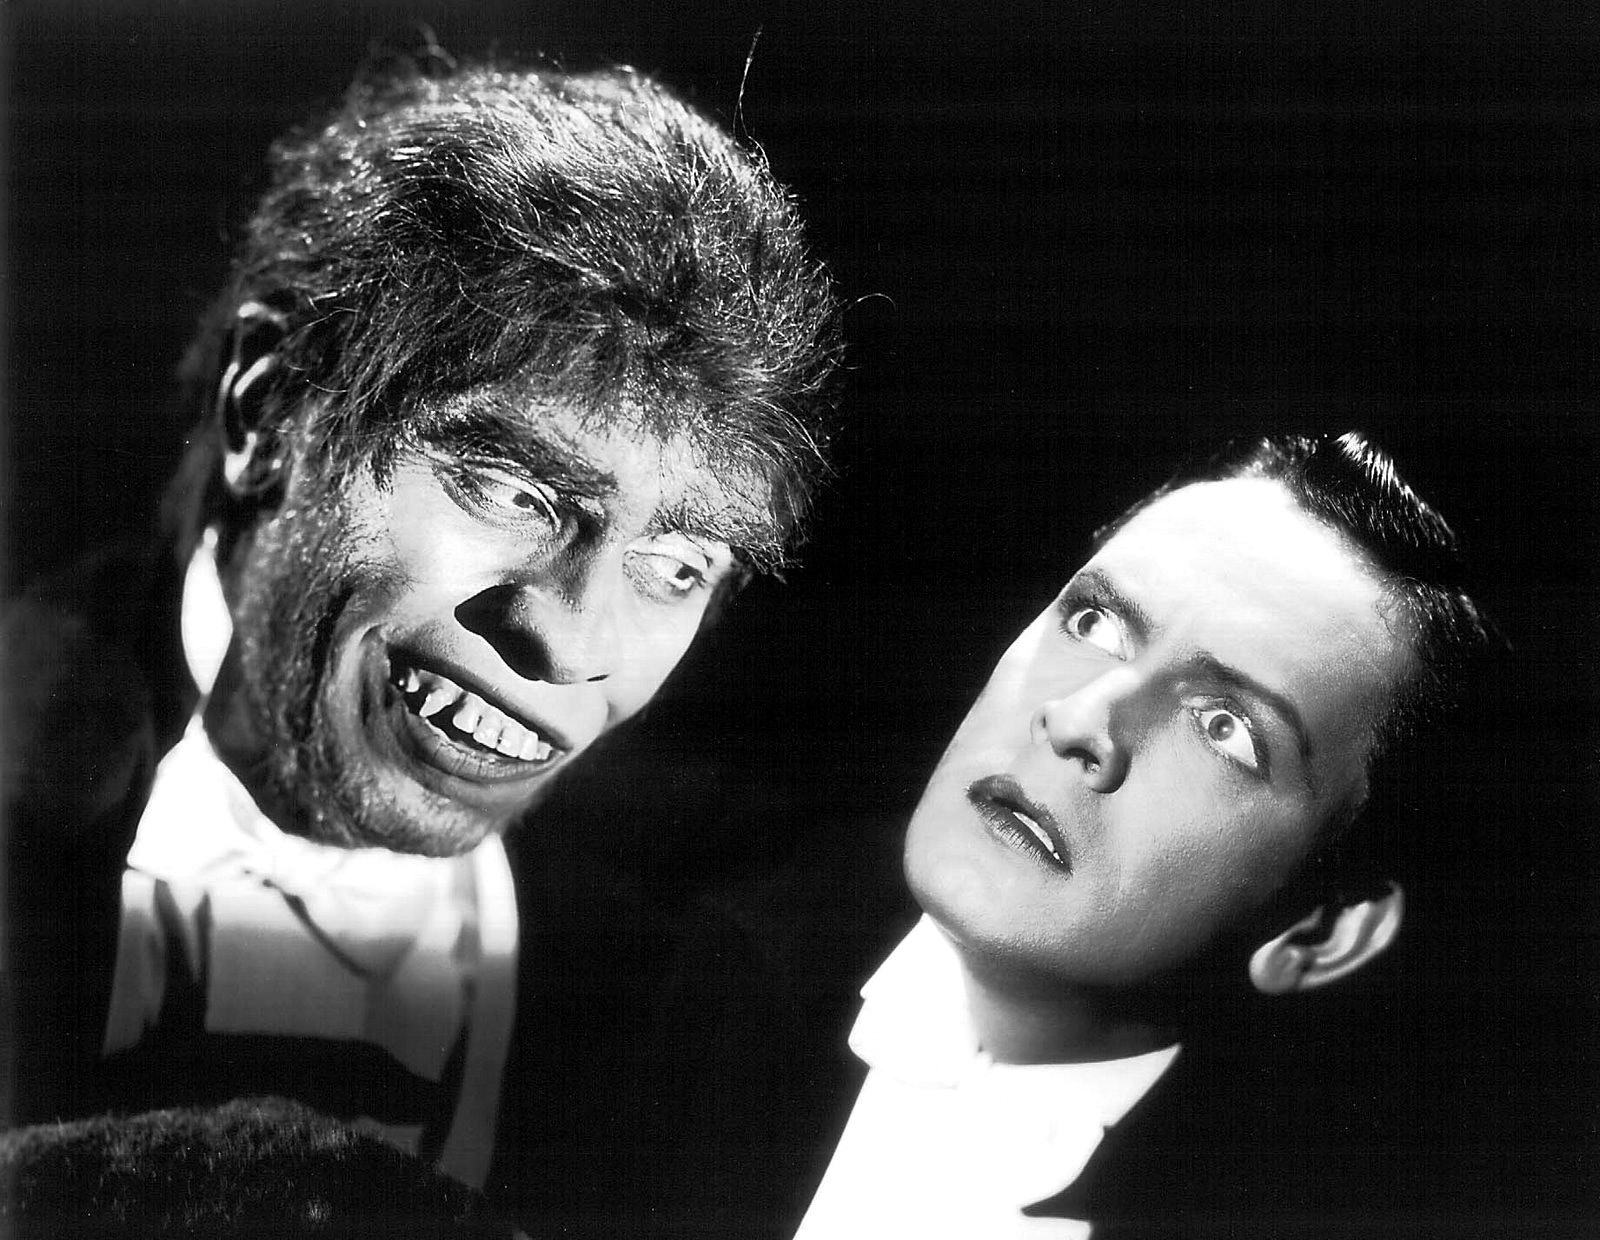 Dr. Jekyll och Mr. Hyde i svartvitt